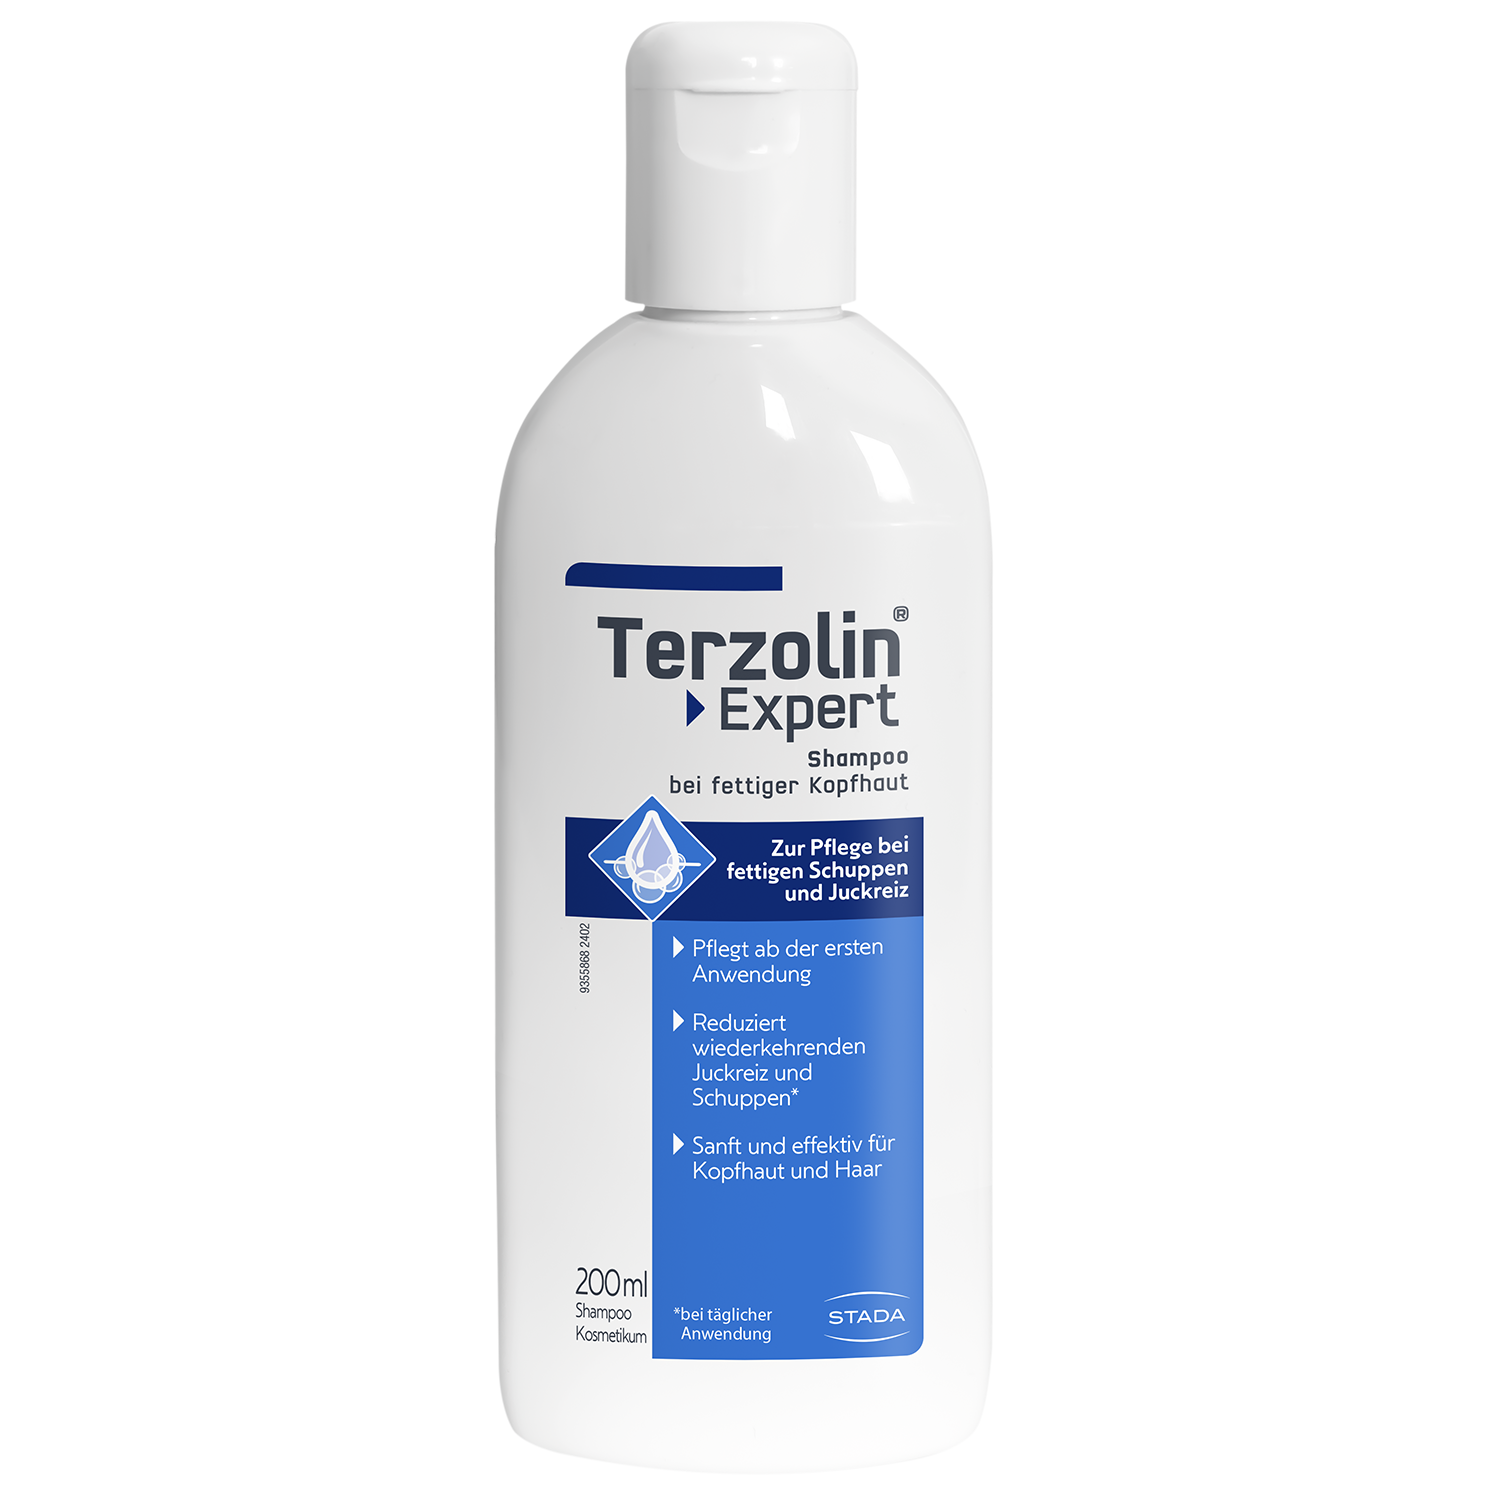 PlusProdukttest Terzolin® Expert Shampoo bei fettiger Kopfhaut